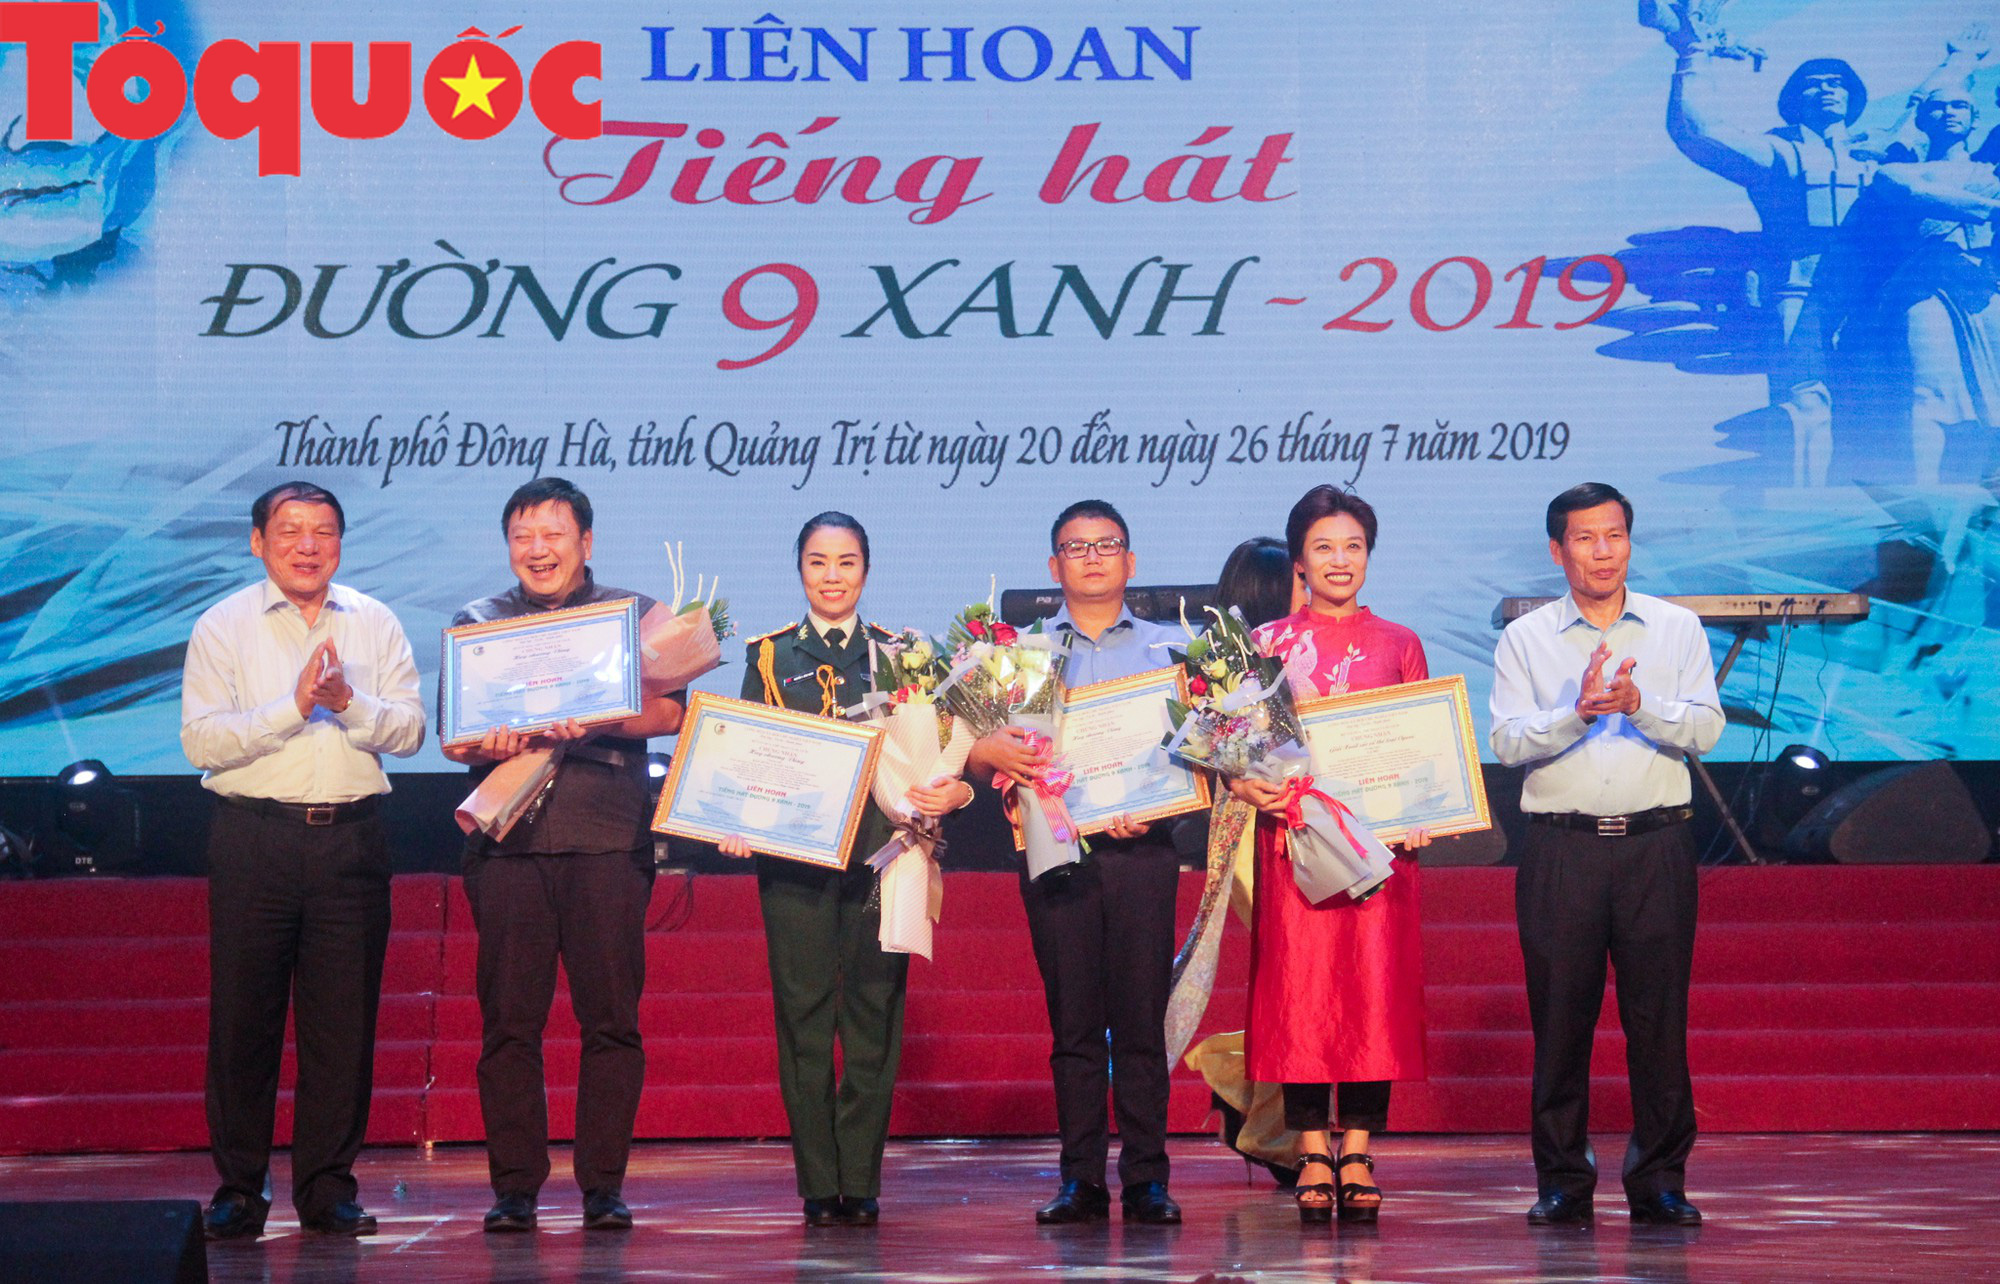 Bộ trưởng Nguyễn Ngọc Thiện dự lễ bế mạc Liên hoan Tiếng hát Đường 9 Xanh 2019